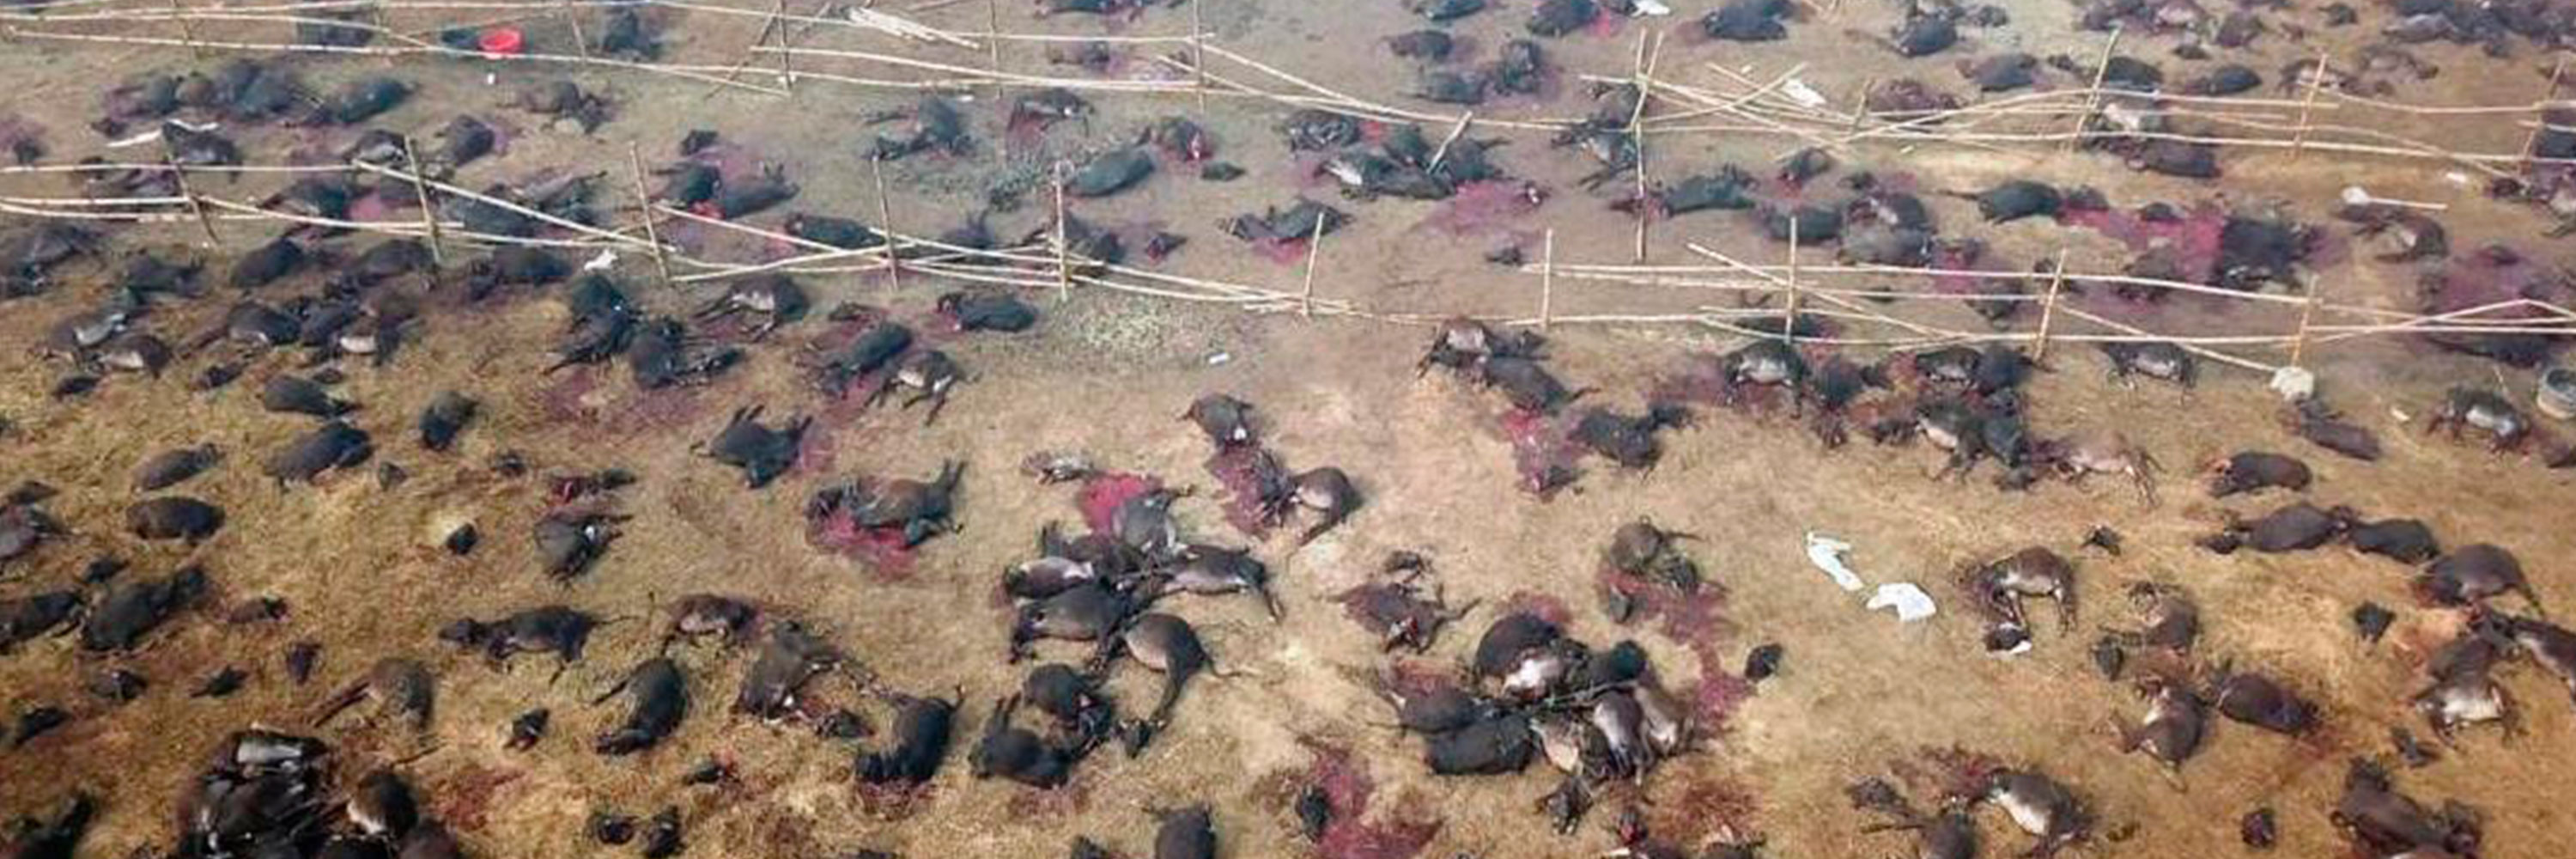 Imagen tomada con dron por igualdad Animal en la que se ven cuerpos sin vida de animales que han sido matados por el festival Gadhi Mail de la India.